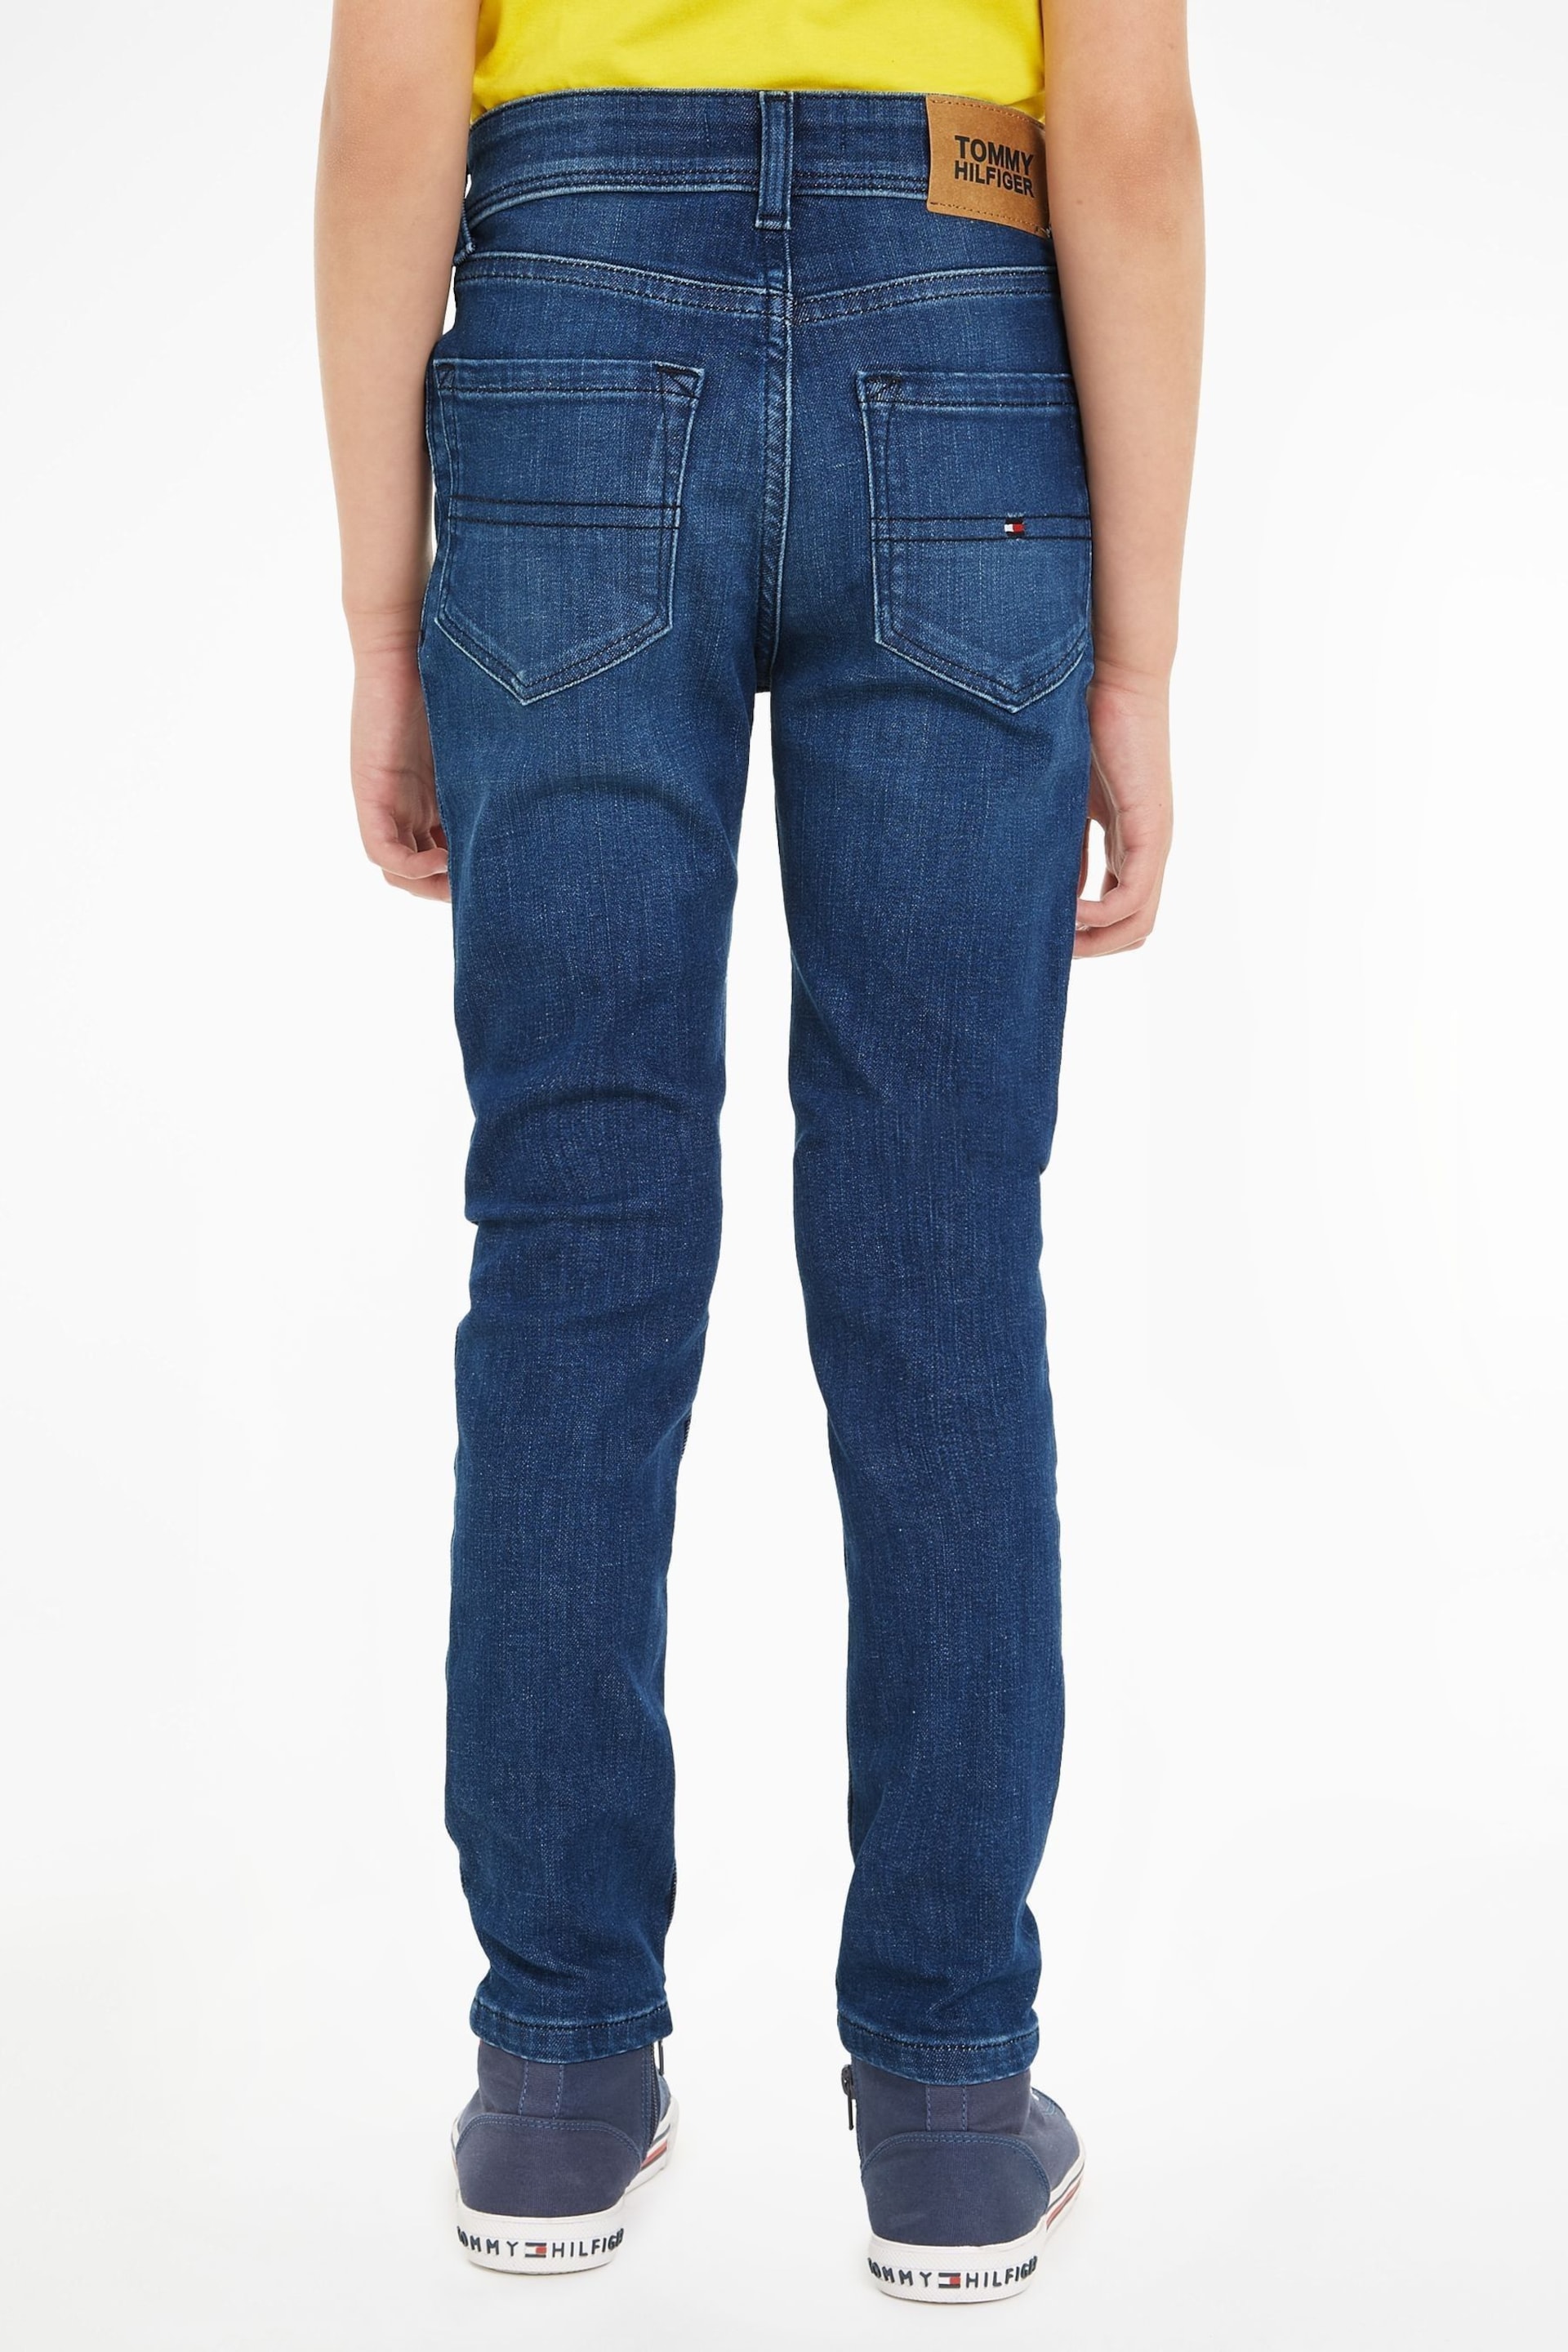 Tommy Hilfiger Blue Scanton Jeans - Image 2 of 6